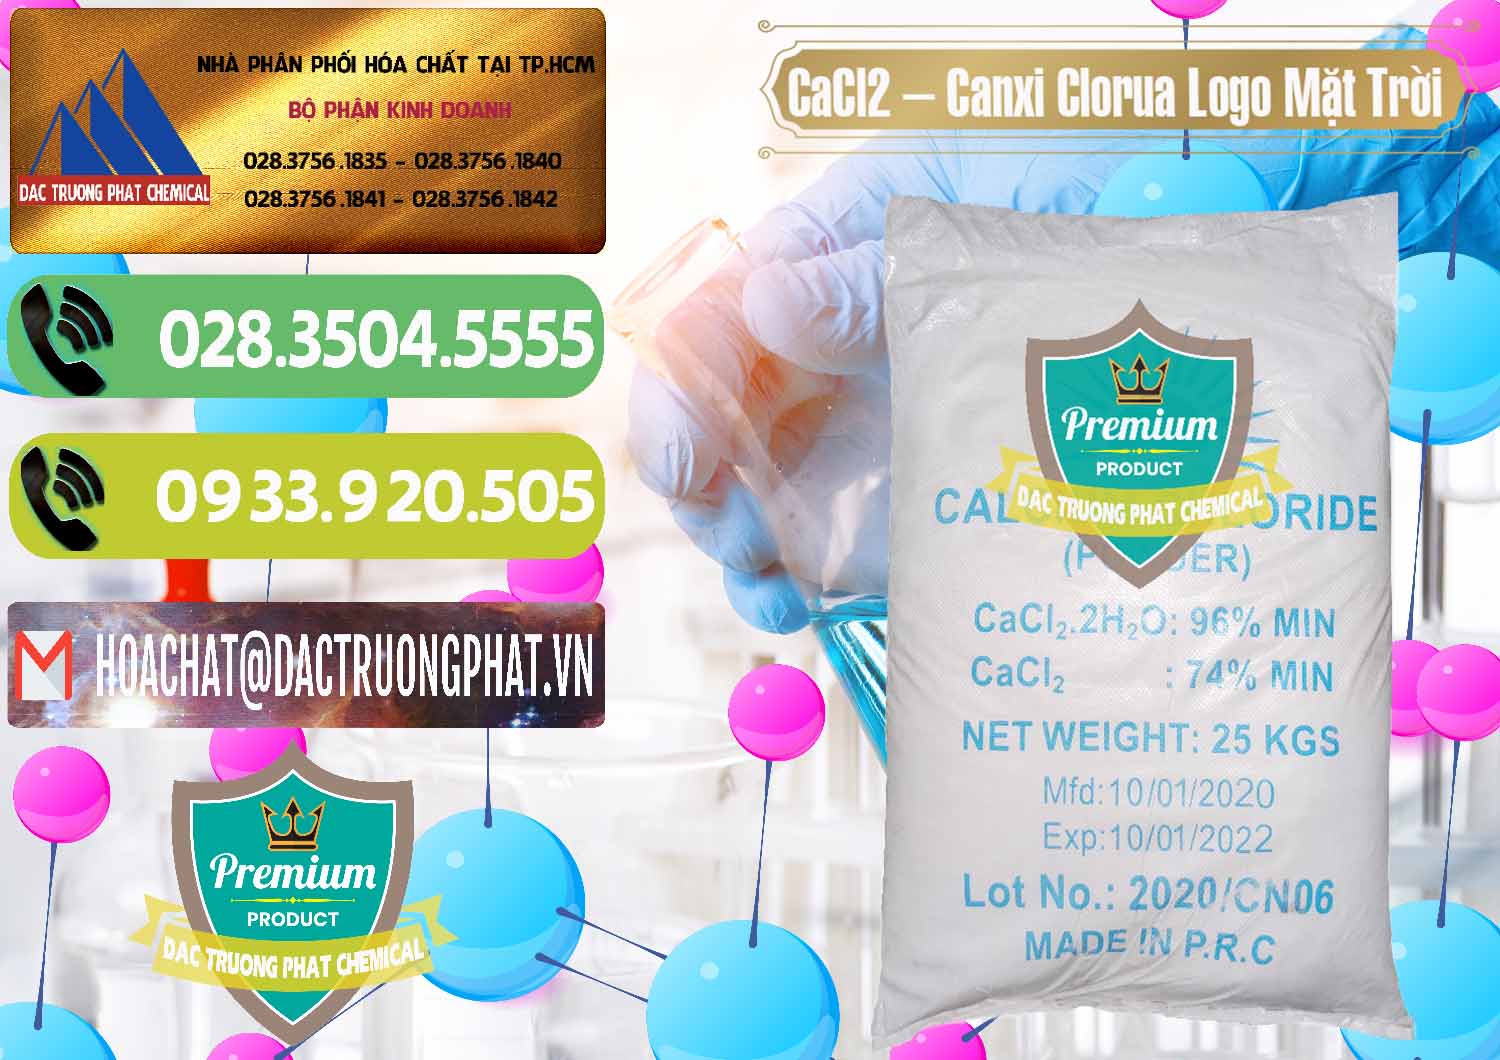 Công ty nhập khẩu & bán CaCl2 – Canxi Clorua 96% Logo Mặt Trời Trung Quốc China - 0041 - Nhập khẩu - phân phối hóa chất tại TP.HCM - hoachatmientay.vn